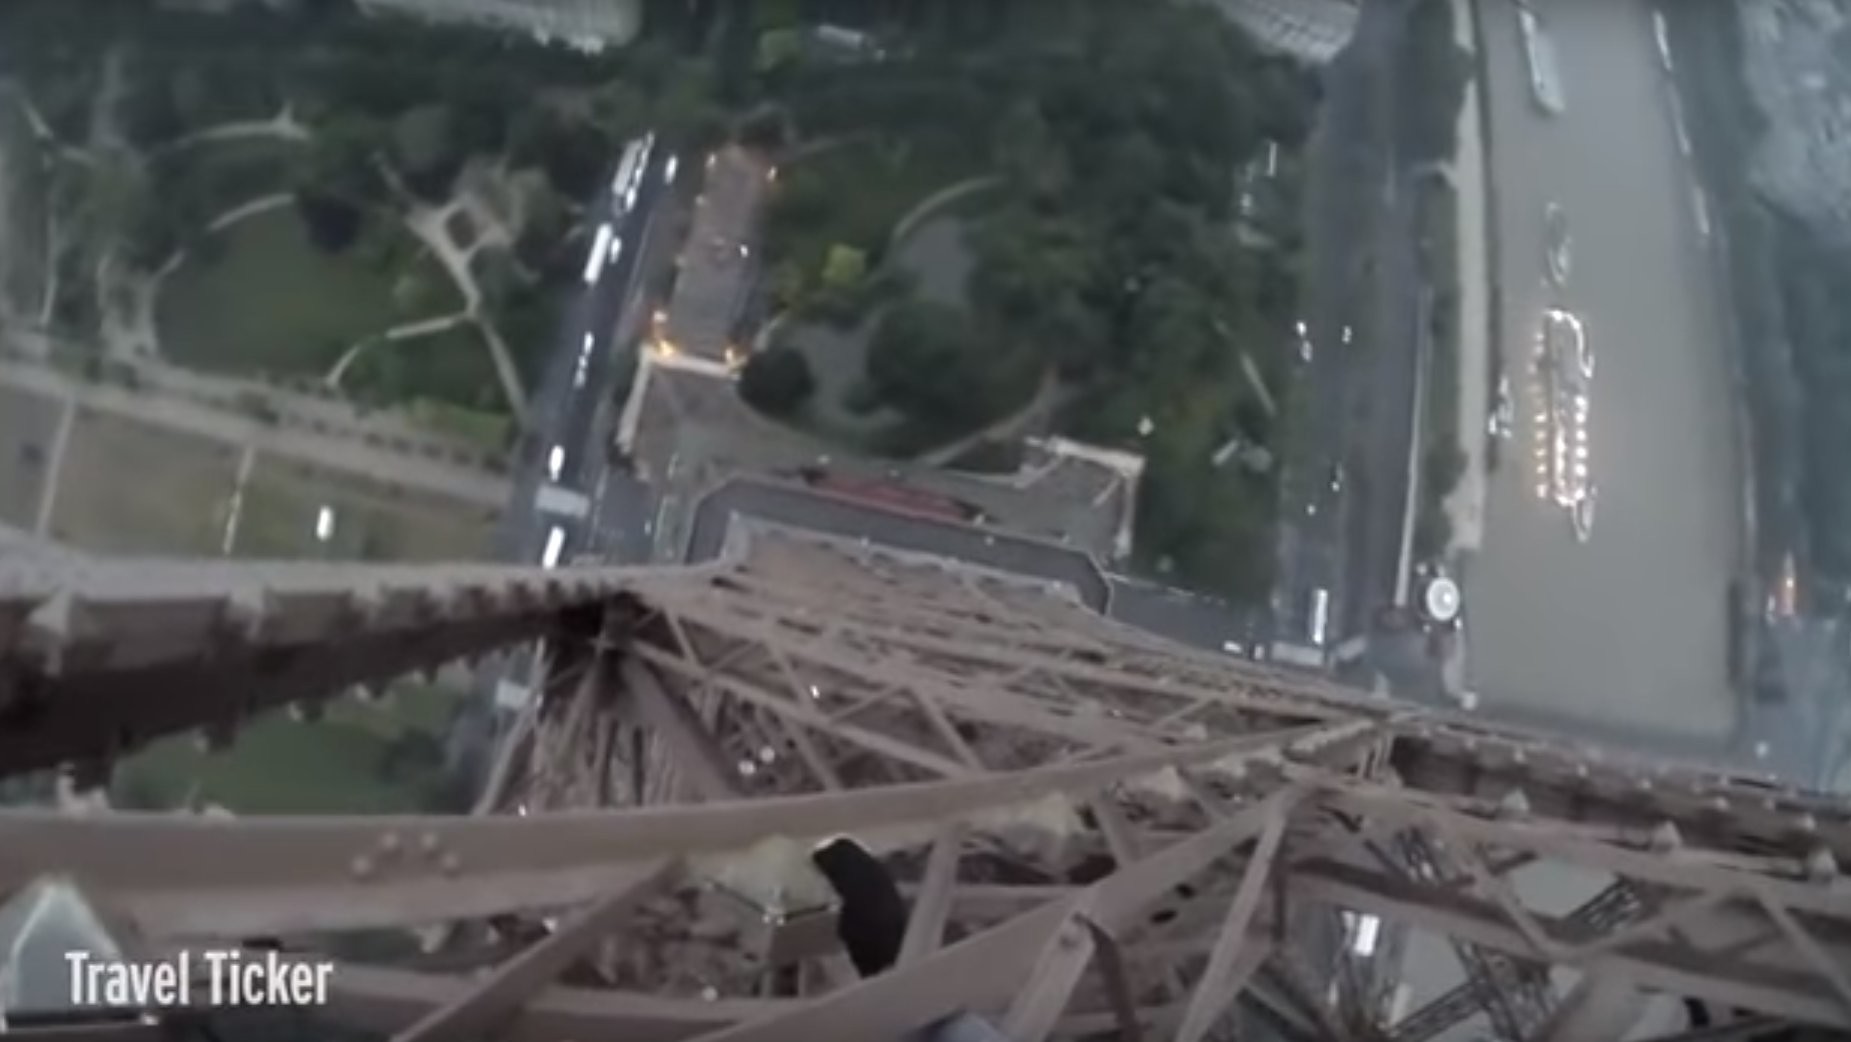 Des casse-cous russes escaladent la Tour Eiffel sans équipement de sécurité (VIDEO CHOC)